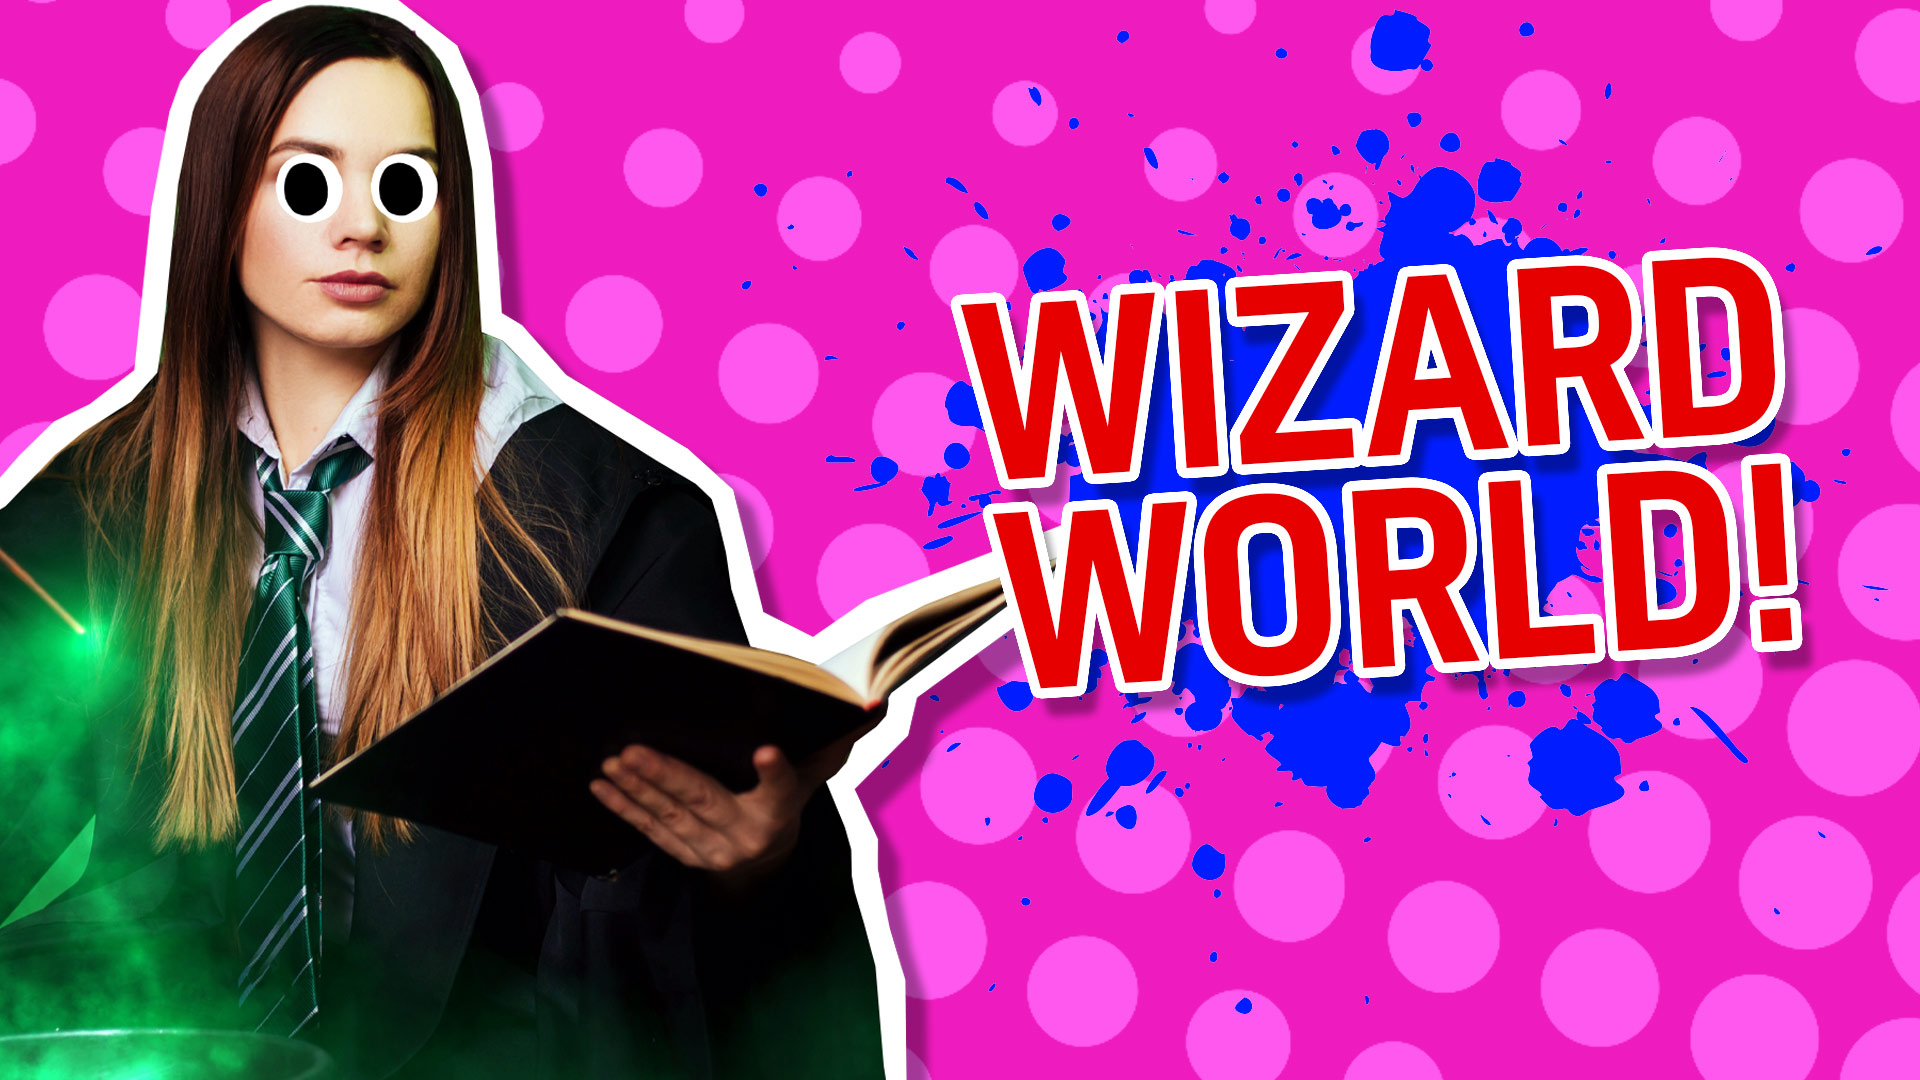 Result: Wizard World